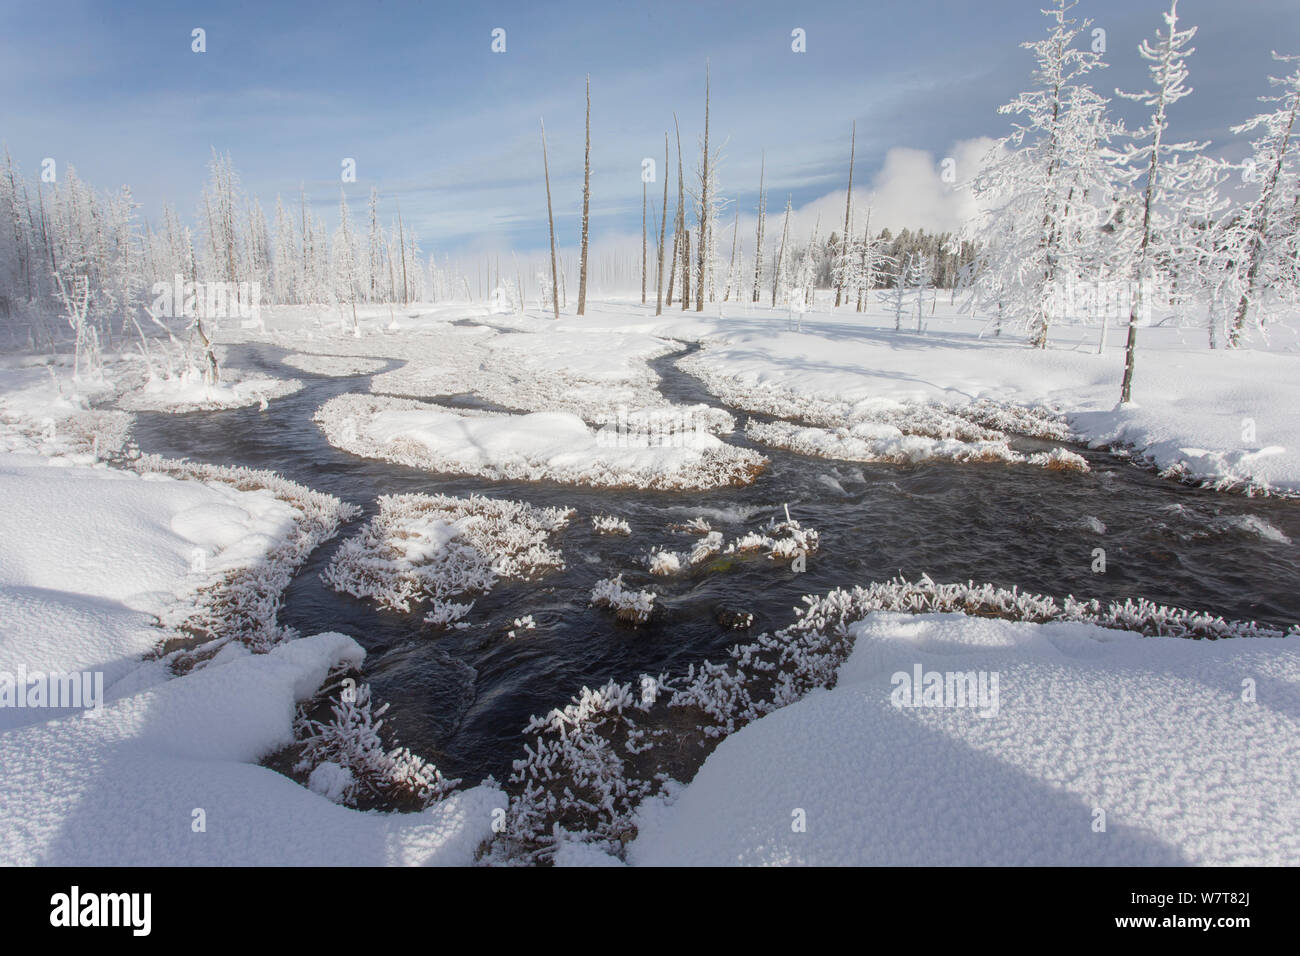 Les arbres enchevêtrés à calcifiées Creek en hiver, le Parc National de Yellowstone, Wyoming, USA, février 2013. Banque D'Images